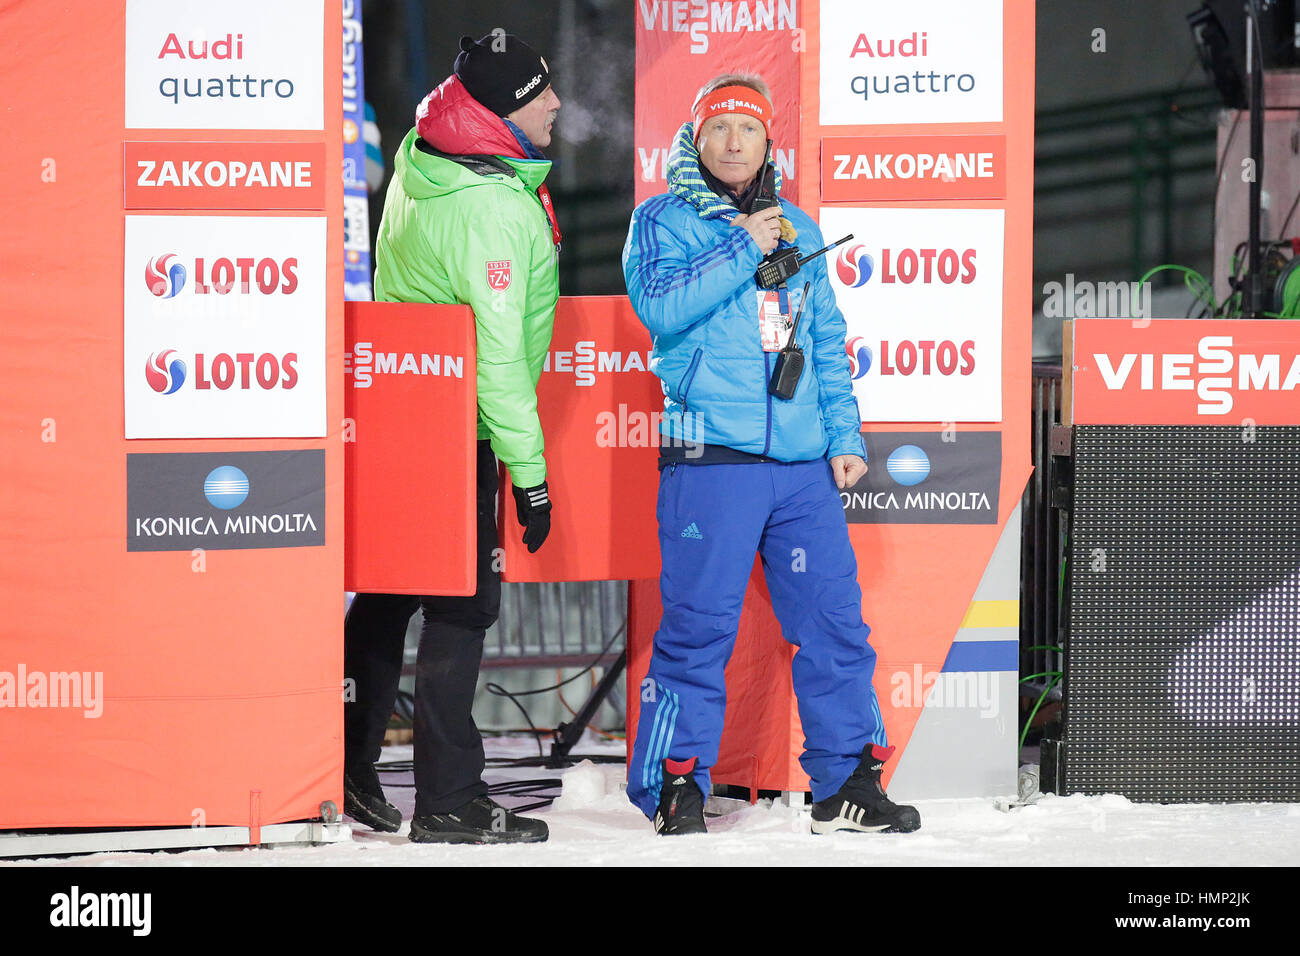 ZAKOPANE, POLONIA - Enero 23, 2016: la Copa Mundial de saltos de esquí FIS en Zakopane o/p Walter Hofer Foto de stock